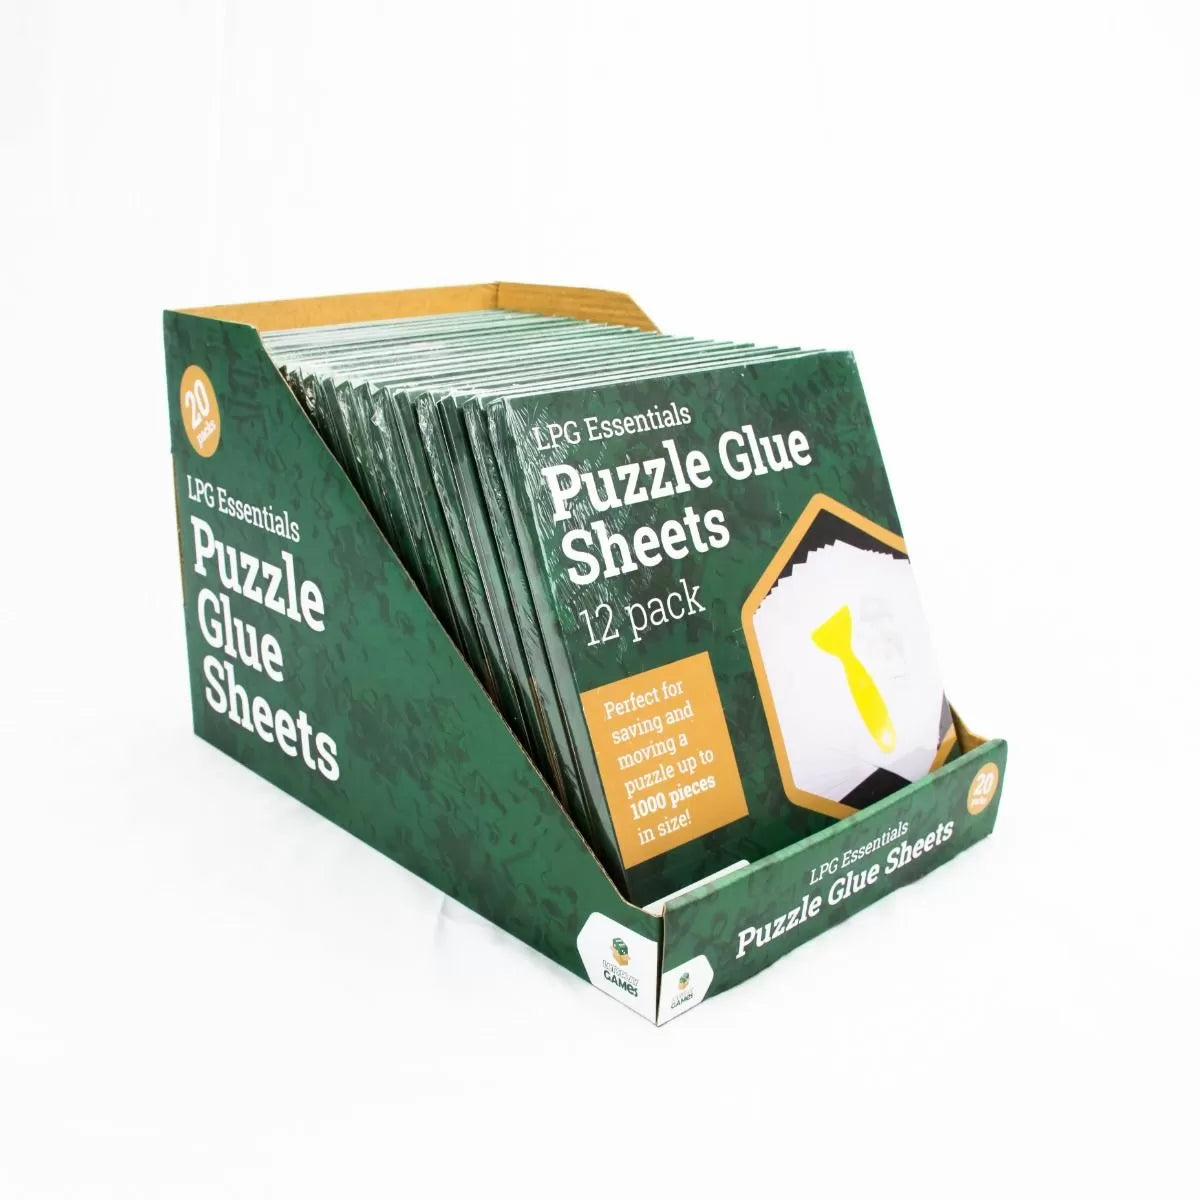 LPG Puzzle Glue Sheets